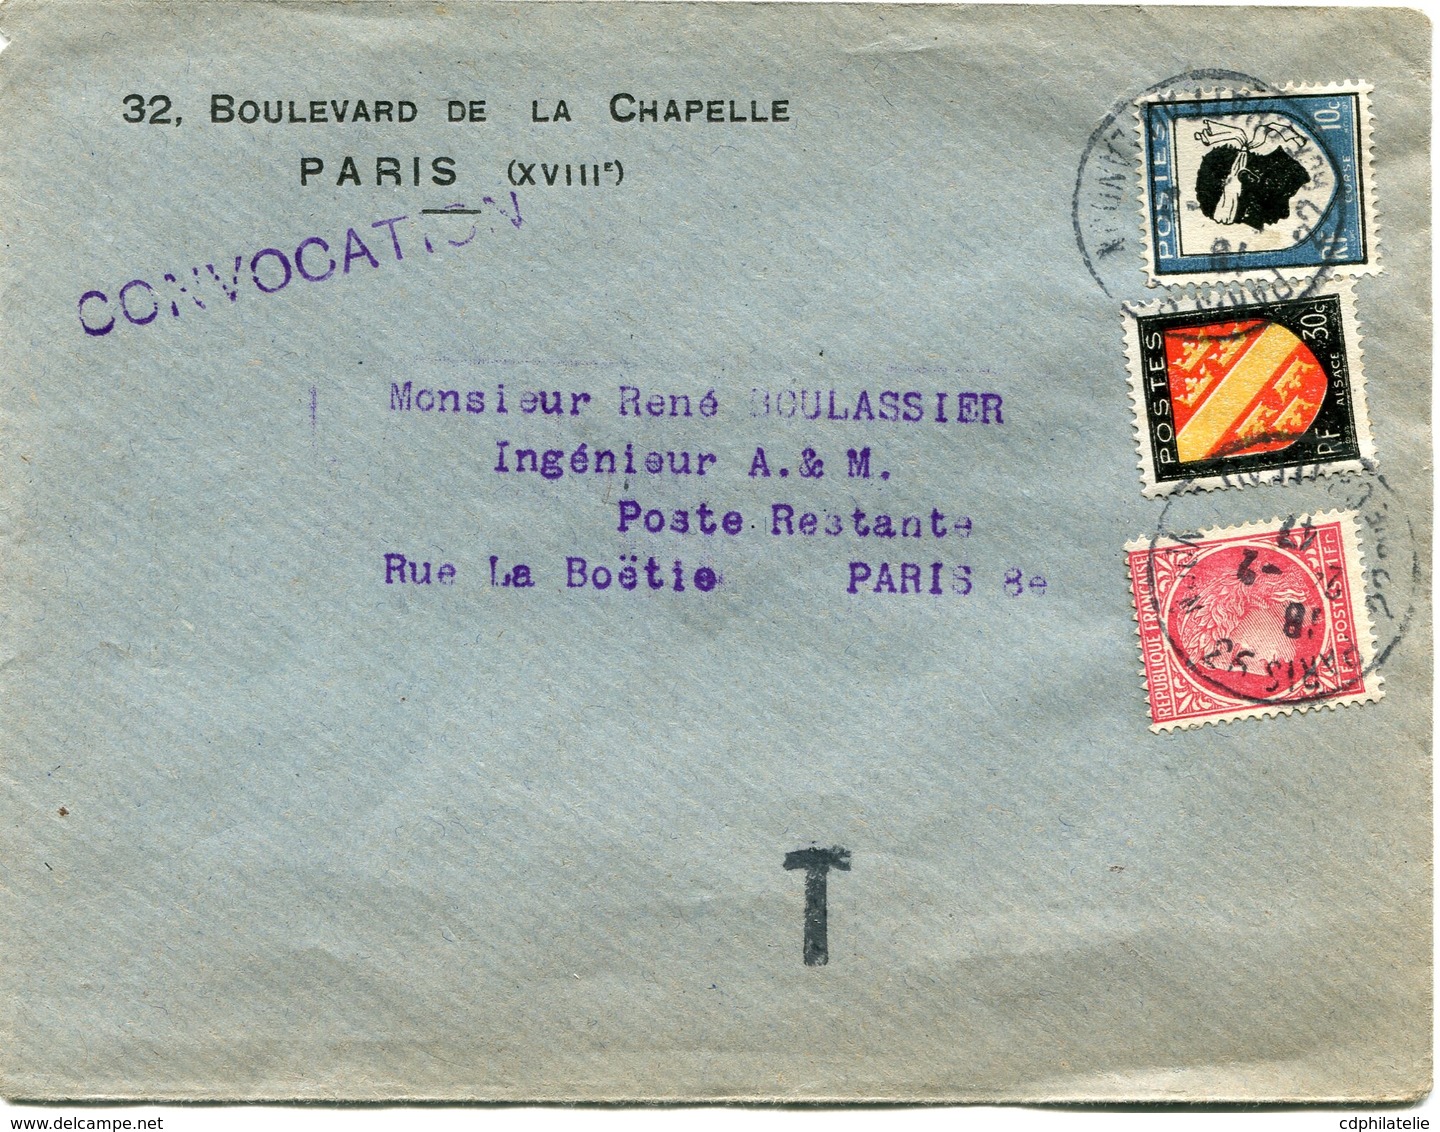 FRANCE LETTRE DEPART PARIS 24-2-47 RUE CHATEAU LANDON TAXEE EN POSTE RESTANTE PARIS 25-2-47 R. LA BOETIE - 1945-47 Ceres (Mazelin)